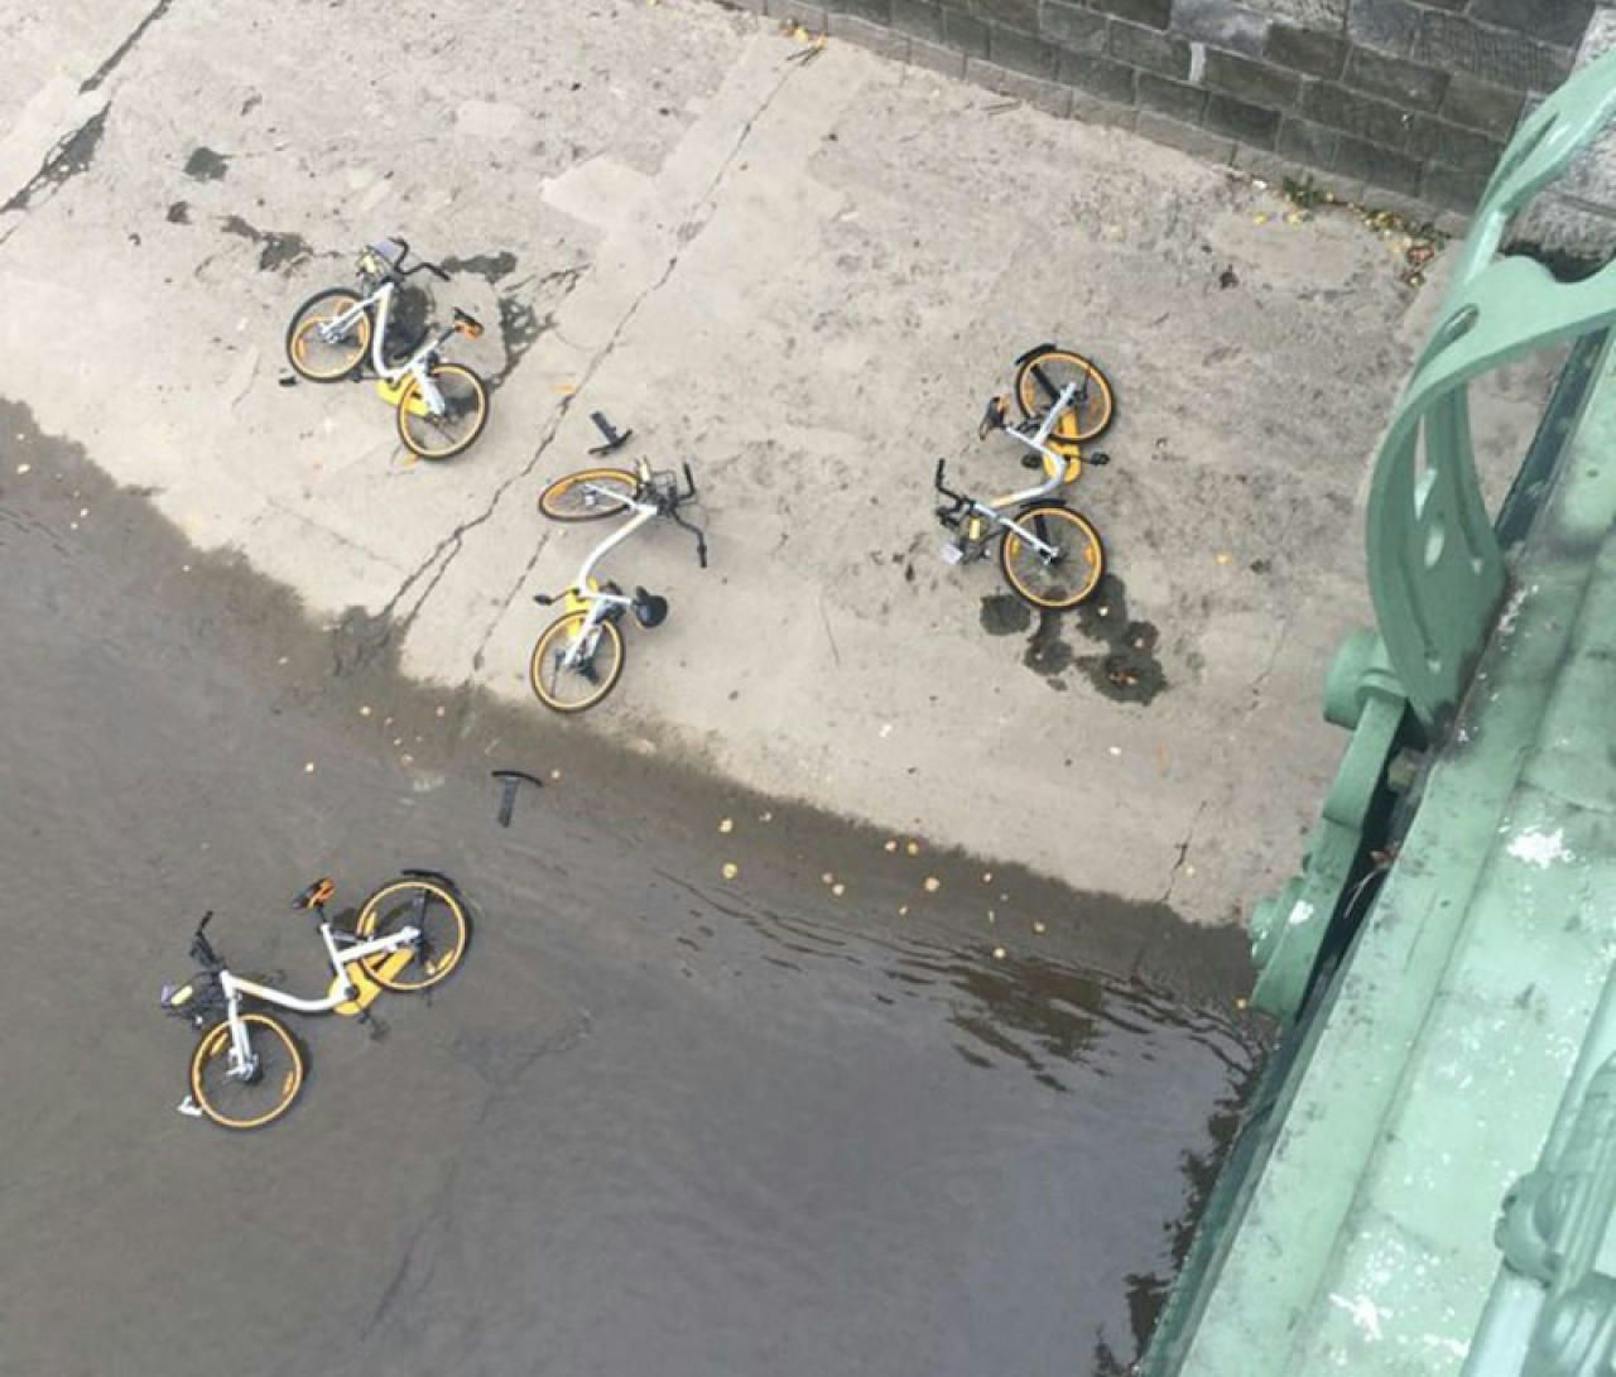 Dass die Räder im Fluss landen, kennt man auch aus anderen Städten, in denen sich die chinesischen Bikesharer niedergelassen haben. 